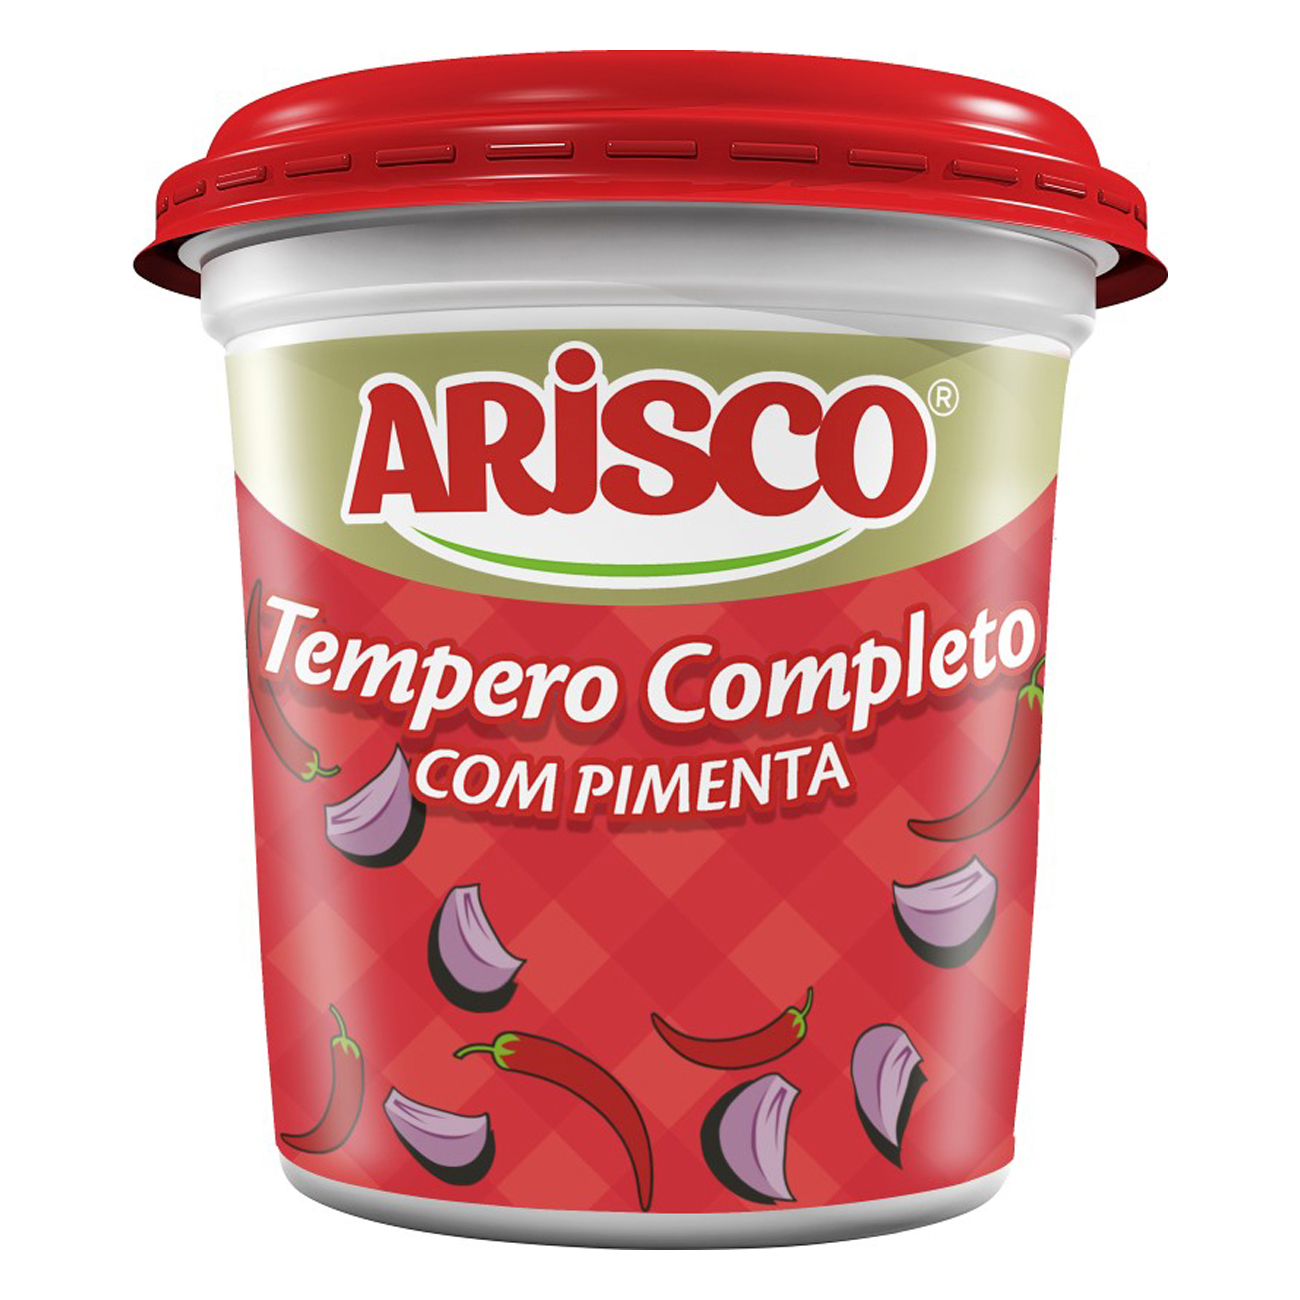 Tempero Completo Arisco com Pimenta Pote 1kg